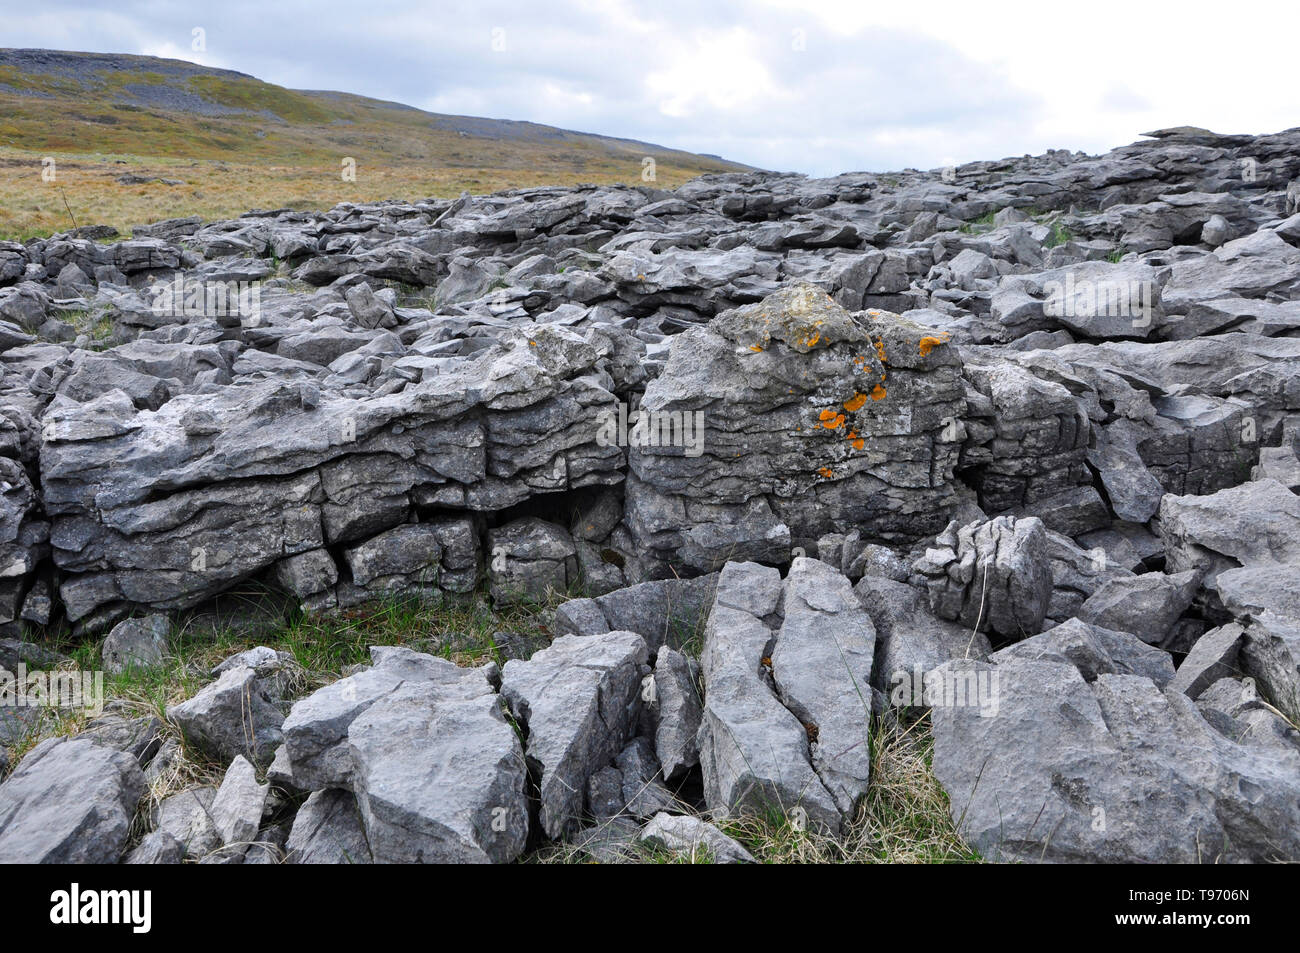 La croissance des lichens aux couleurs vives sur un affleurement de calcaire carbonifère sur la montagne au-dessus de Dan-yr-Ogof caves dans la Montagne Noire, au sud du Pays de Galles, Royaume-Uni Banque D'Images